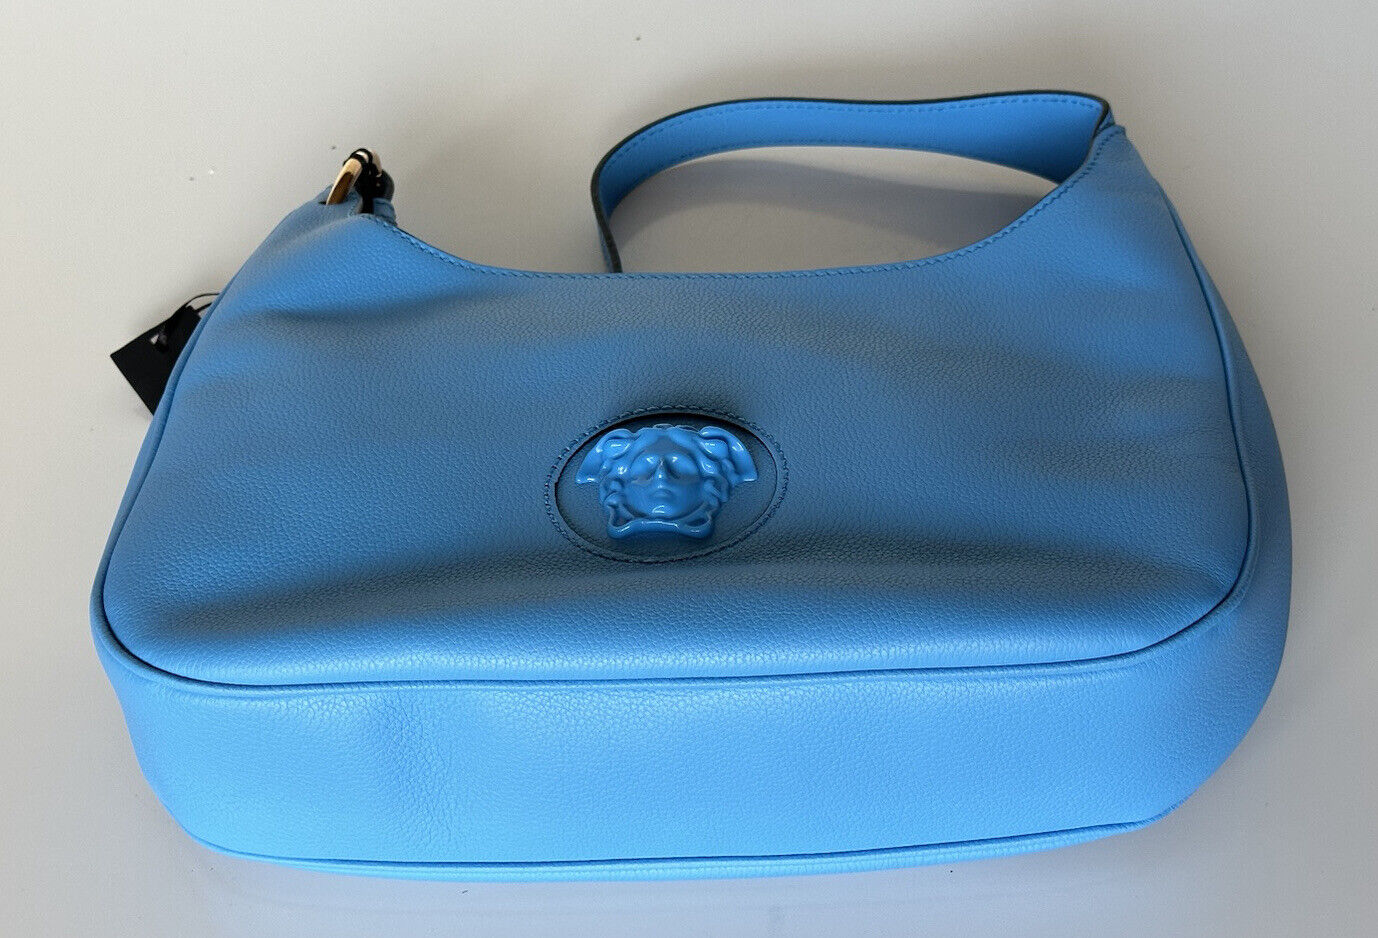 Neu mit Etikett: 1875 $ Versace Medusa Head Kalbsleder Blau Mittelgroße Hobo-Tasche 1000699 IT 